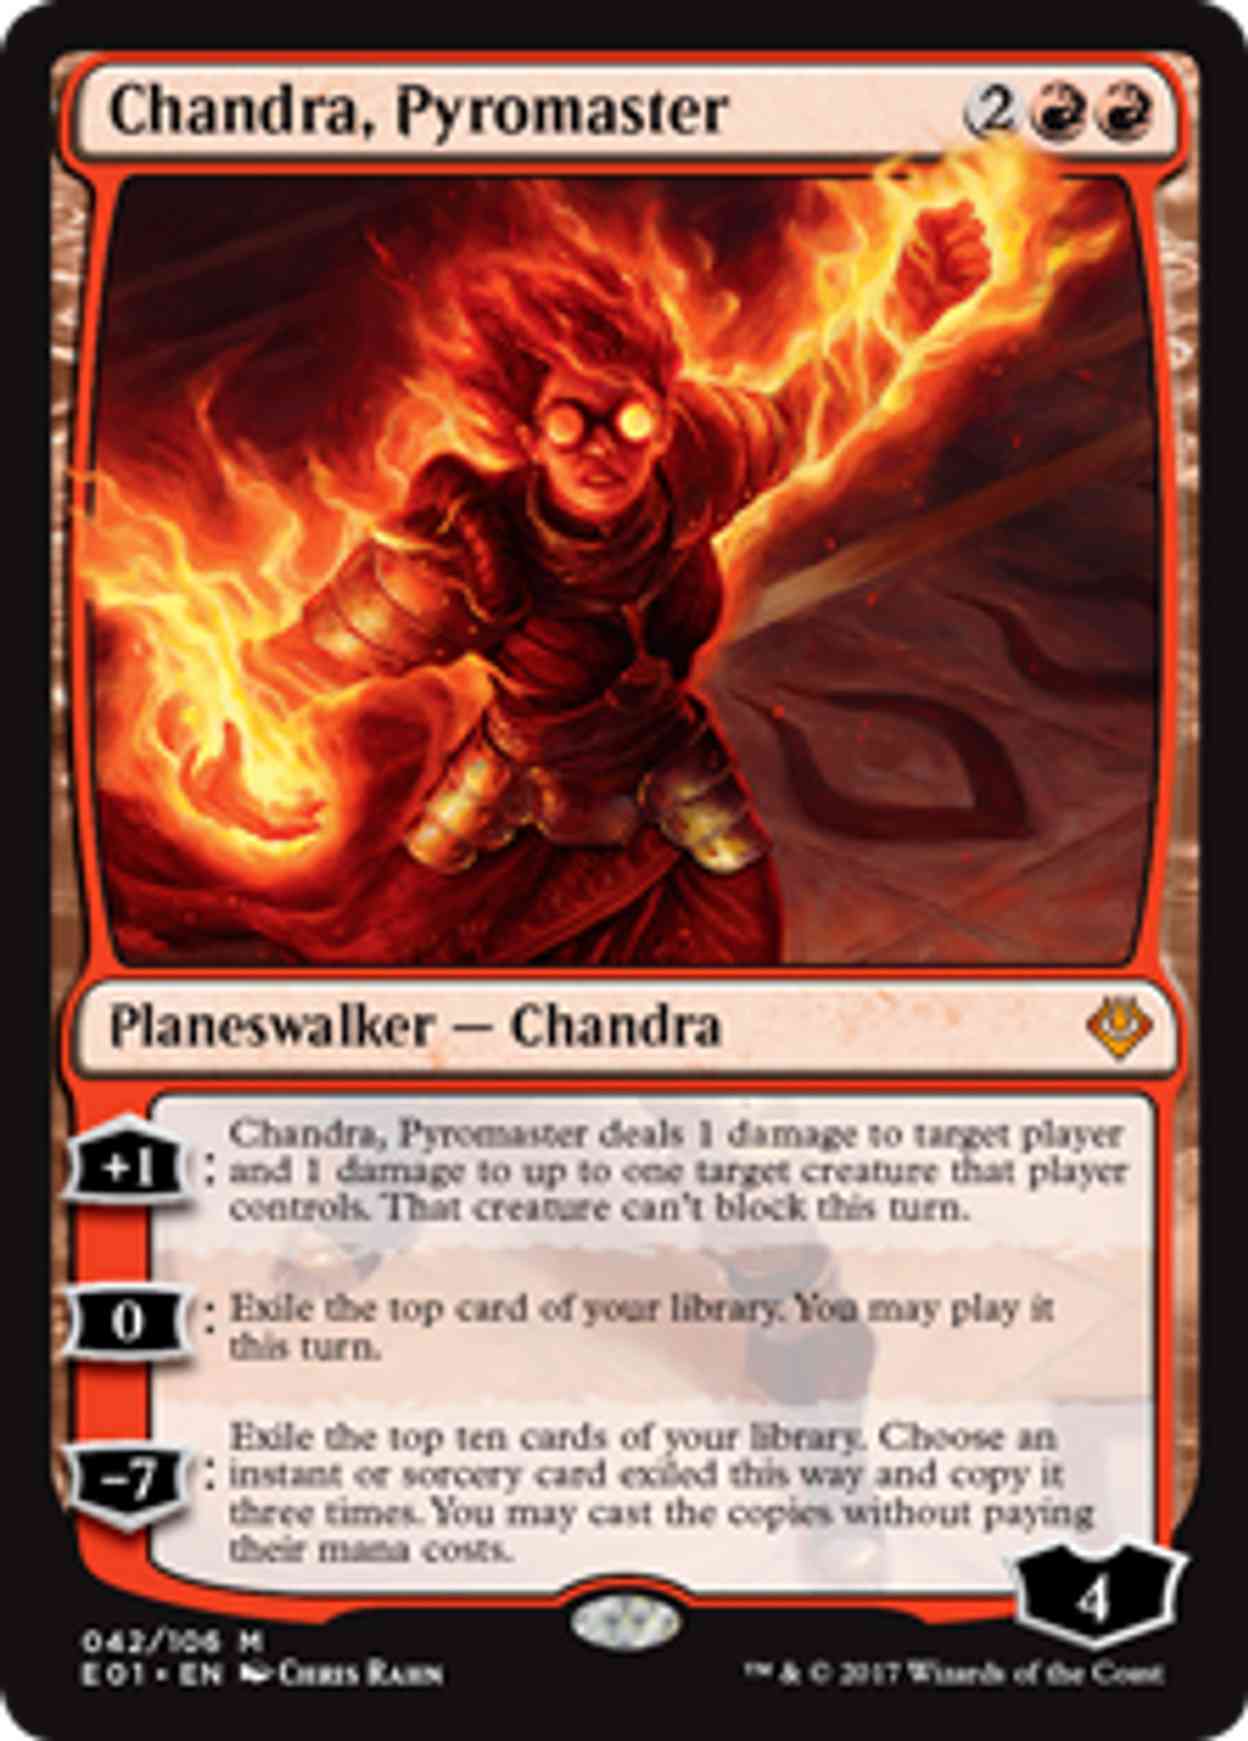 Chandra, Pyromaster magic card front